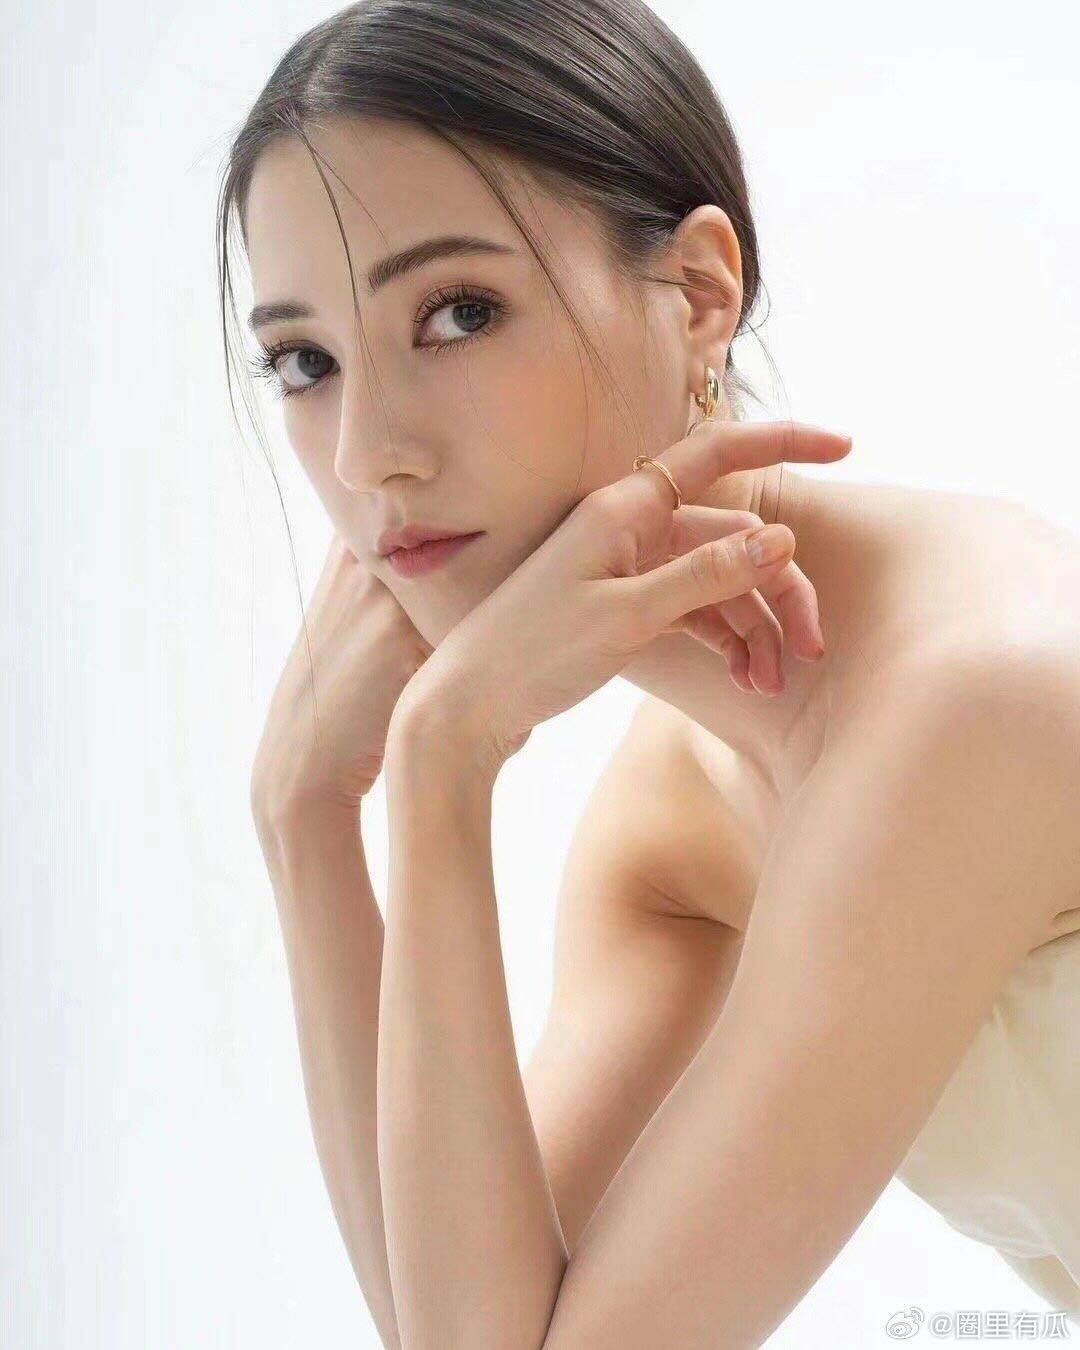 Russian-Mongolian model-actress Naran plays Su Daji in Creation of the Gods I. Photo: Naran/Weibo